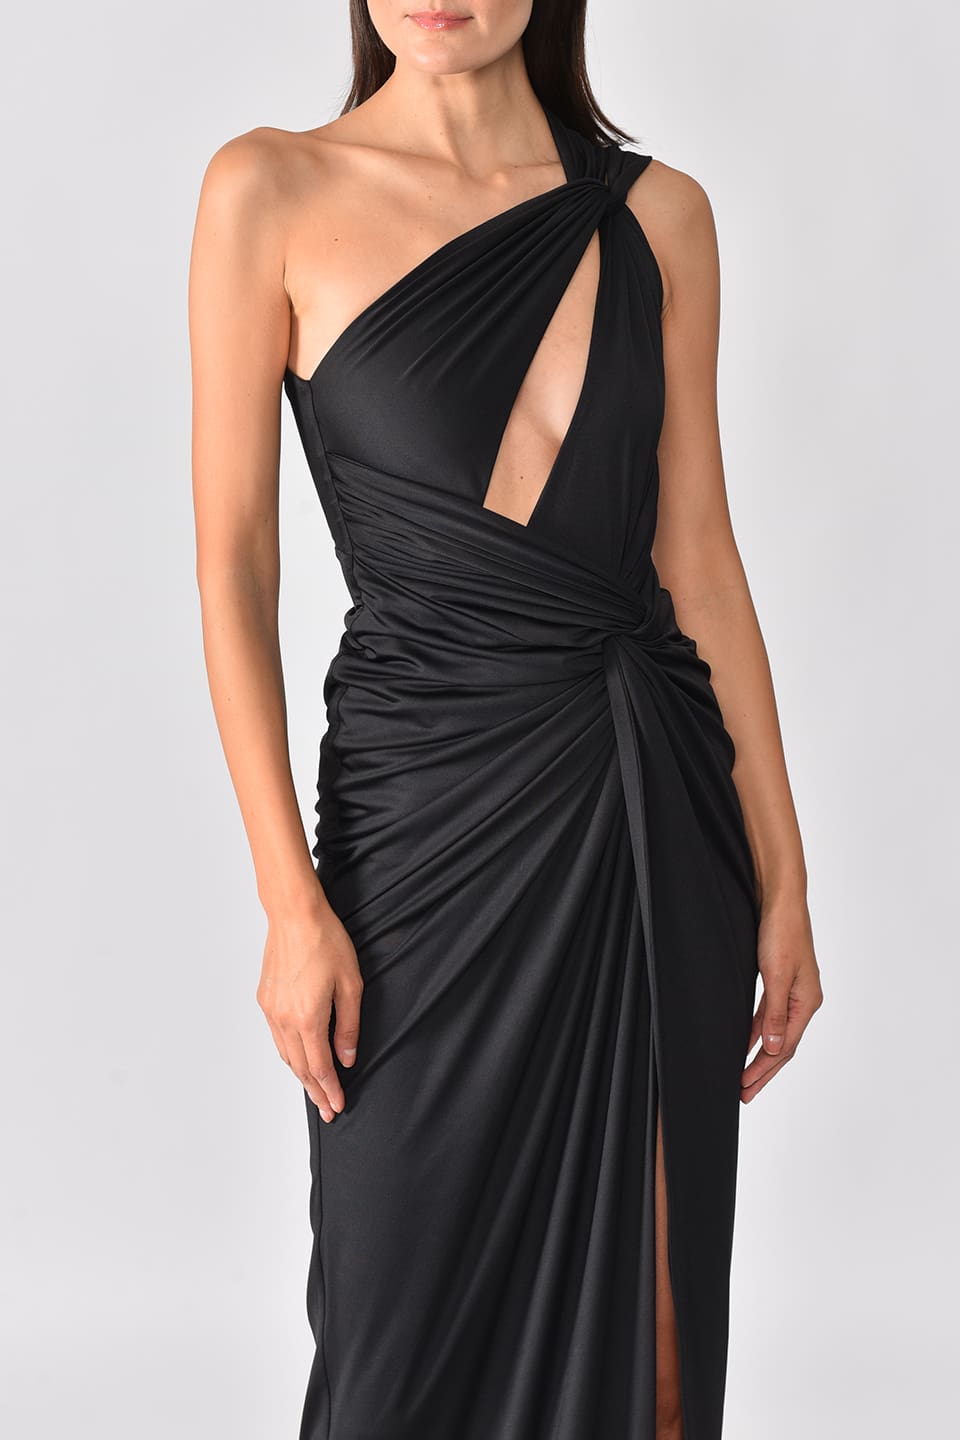 Model wearing black one shoulder dress with long side slit from Hamel fashion designer, in pose